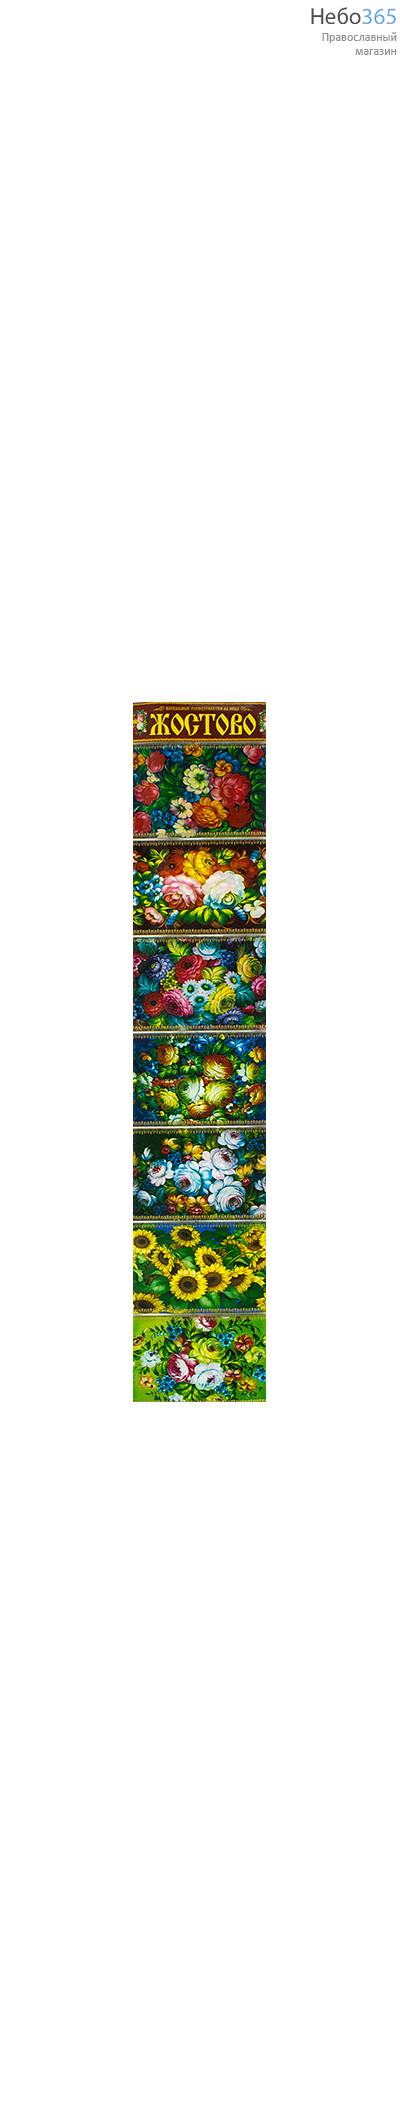  Наклейка пасхальная для яиц, из термоплёнки, в ассортименте серия: Жостово, фото 1 